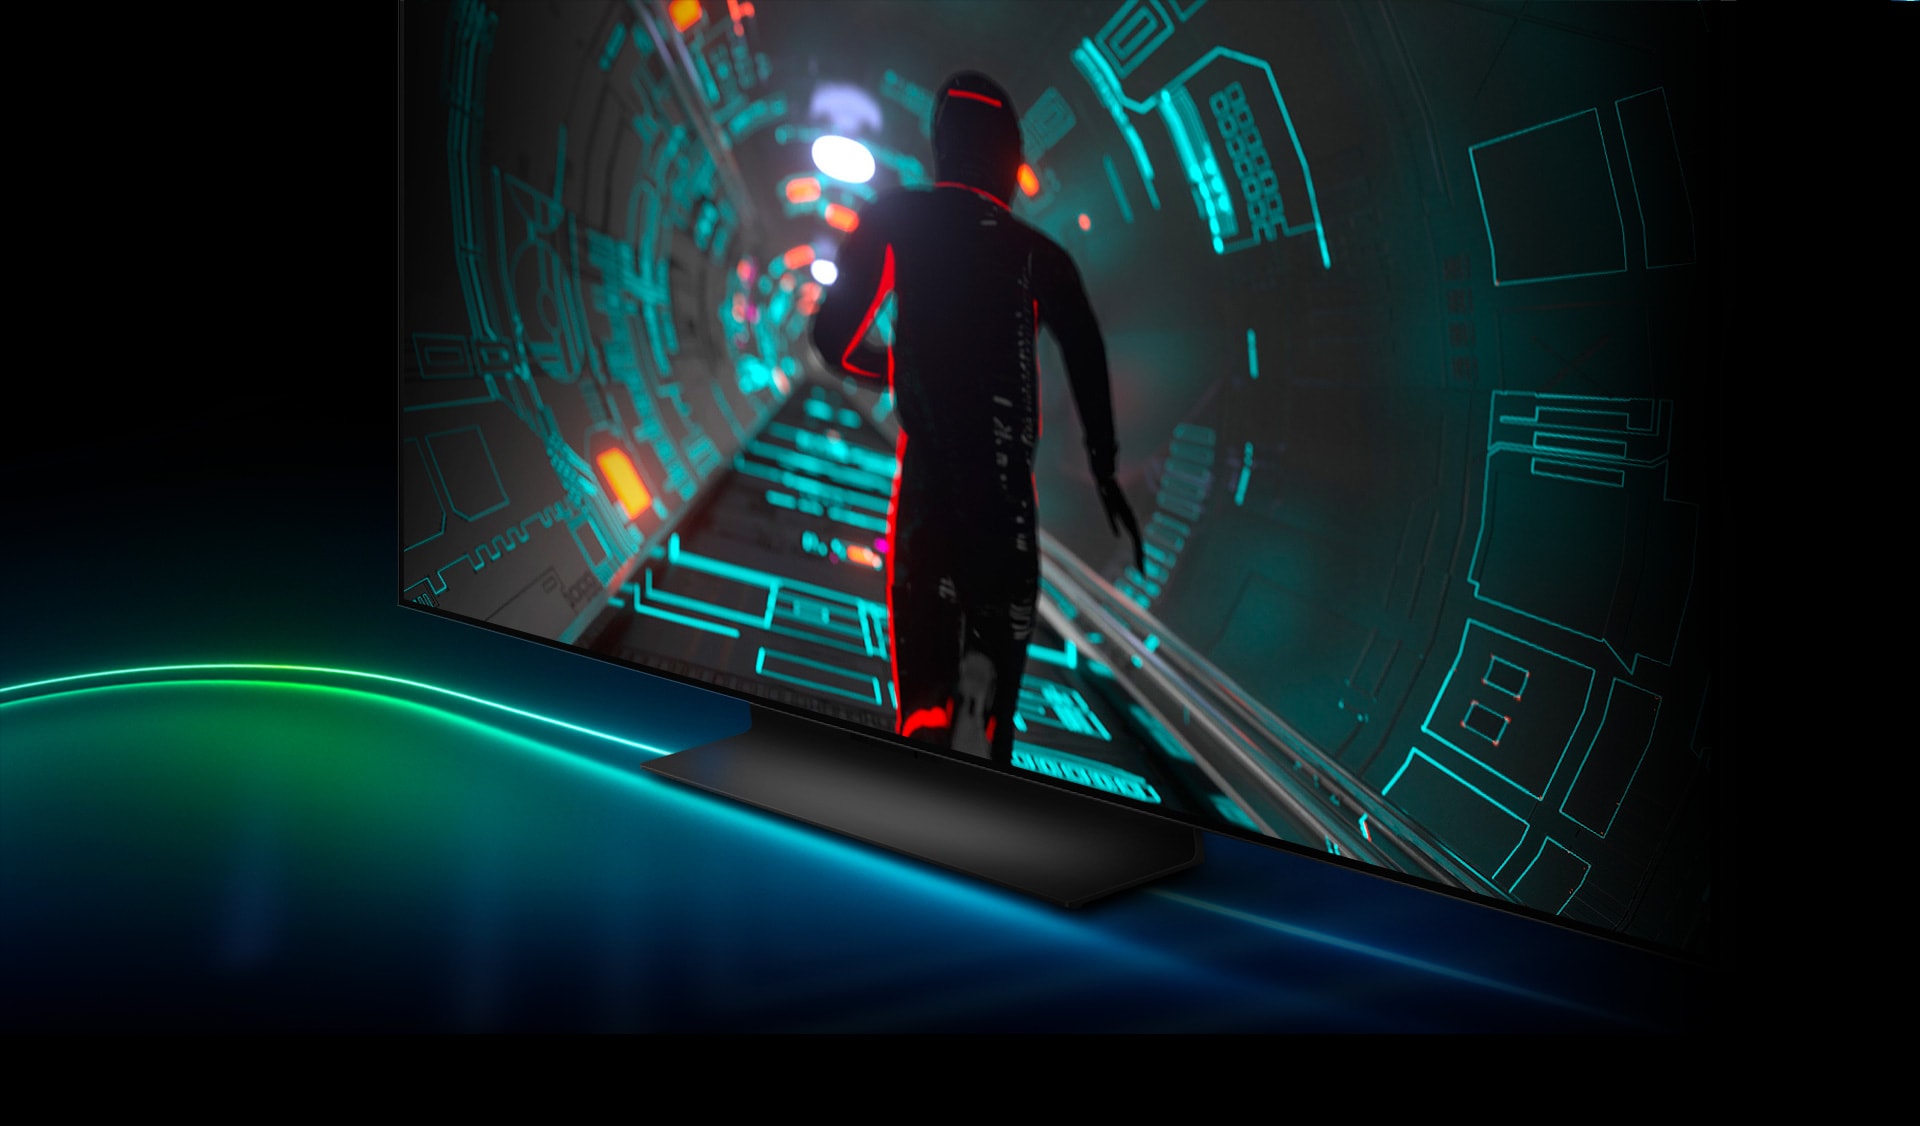 Mokslinės fantastikos stiliaus žaidimo veikėjas bėga per tunelį su neoninėmis šviesomis
